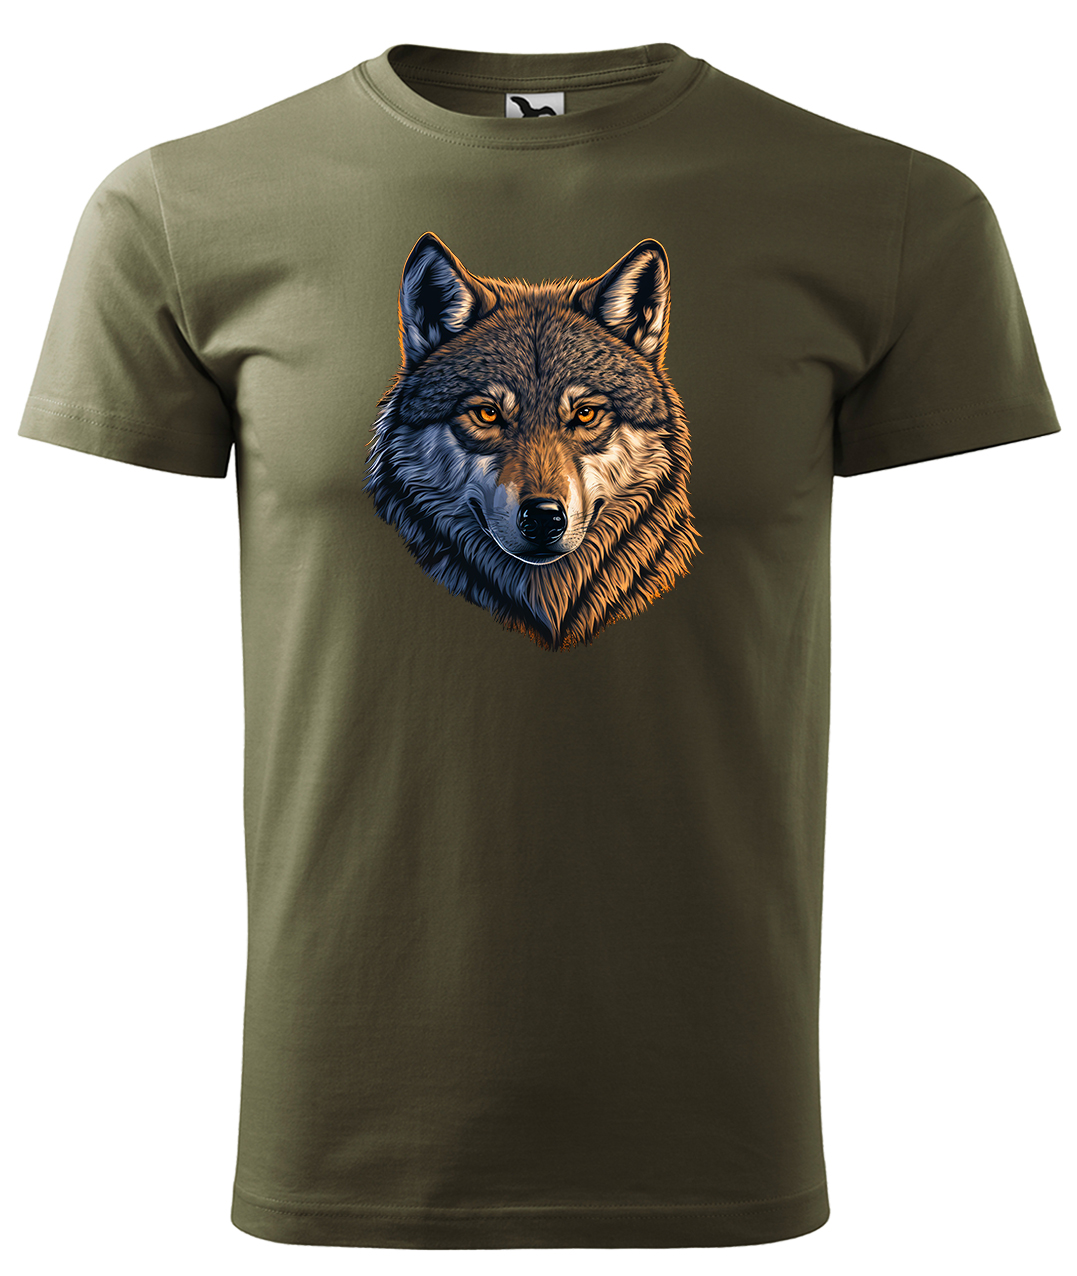 Dětské tričko s vlkem - Hlava vlka Velikost: 6 let / 122 cm, Barva: Military (69), Délka rukávu: Krátký rukáv